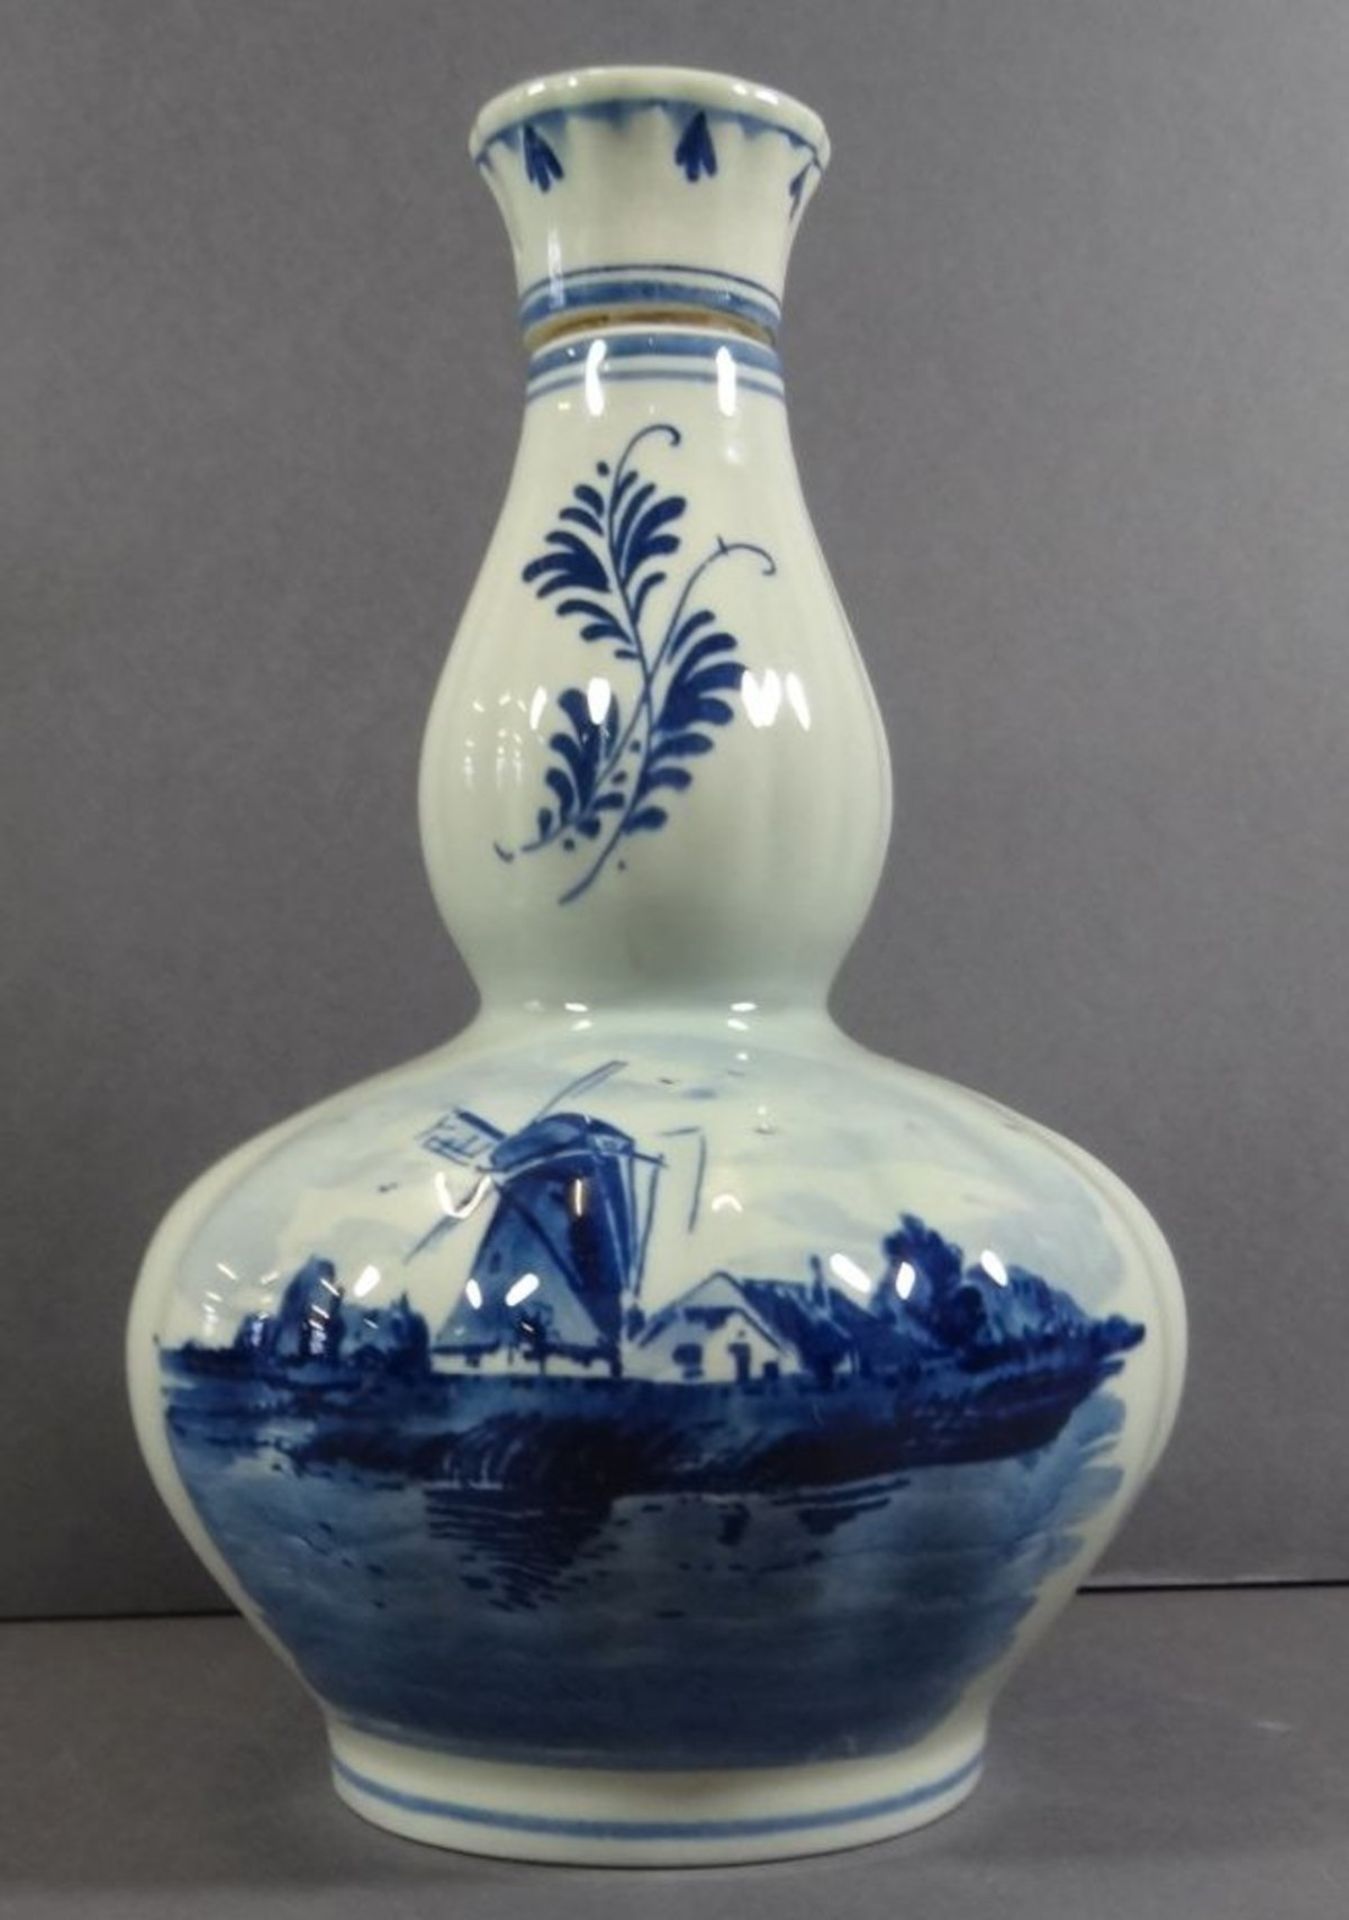 Flasche mit Spieluhr "Delft Blue" Blaumalerei, Werk steht, H-21 cm - Image 3 of 10